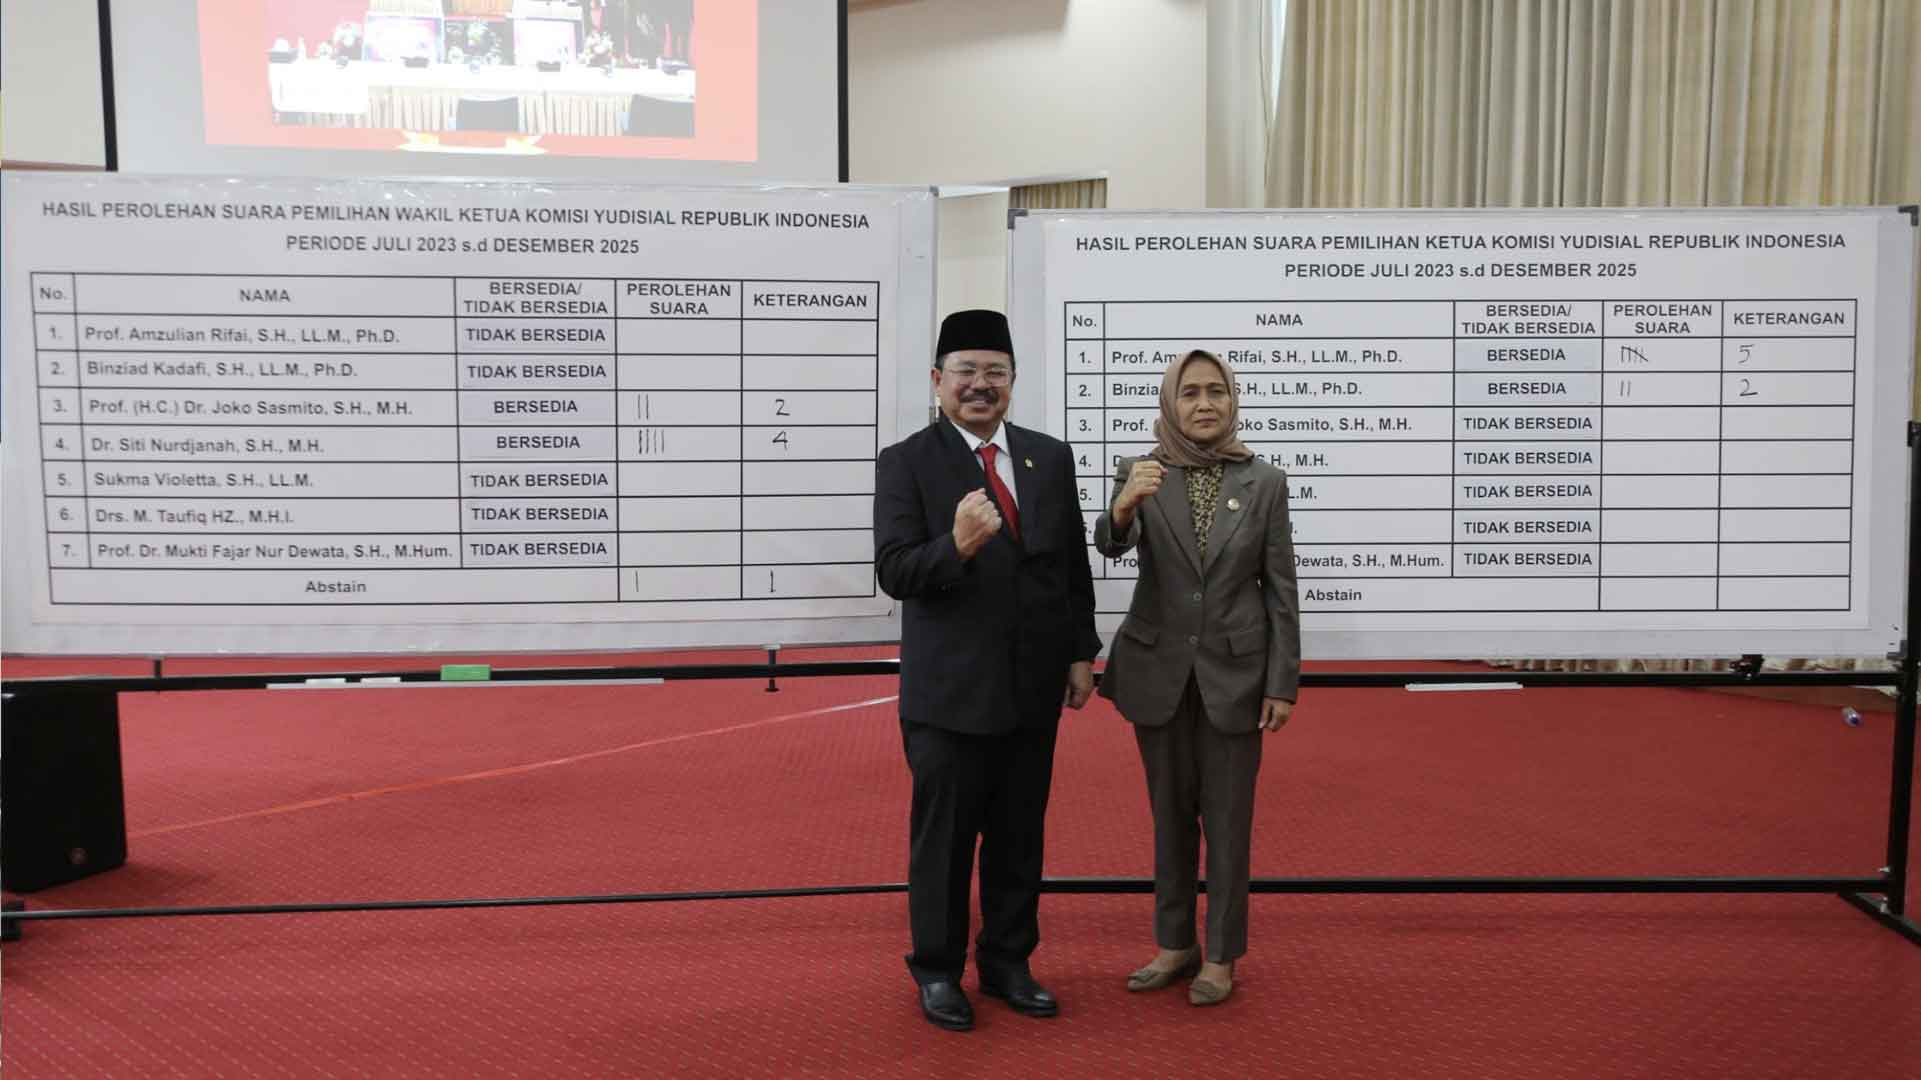 Amzulian Rifai dan Siti Nurdjanah Terpilih Sebagai Pimpinan KY Paruh Kedua Juli 2023-Desember 2025